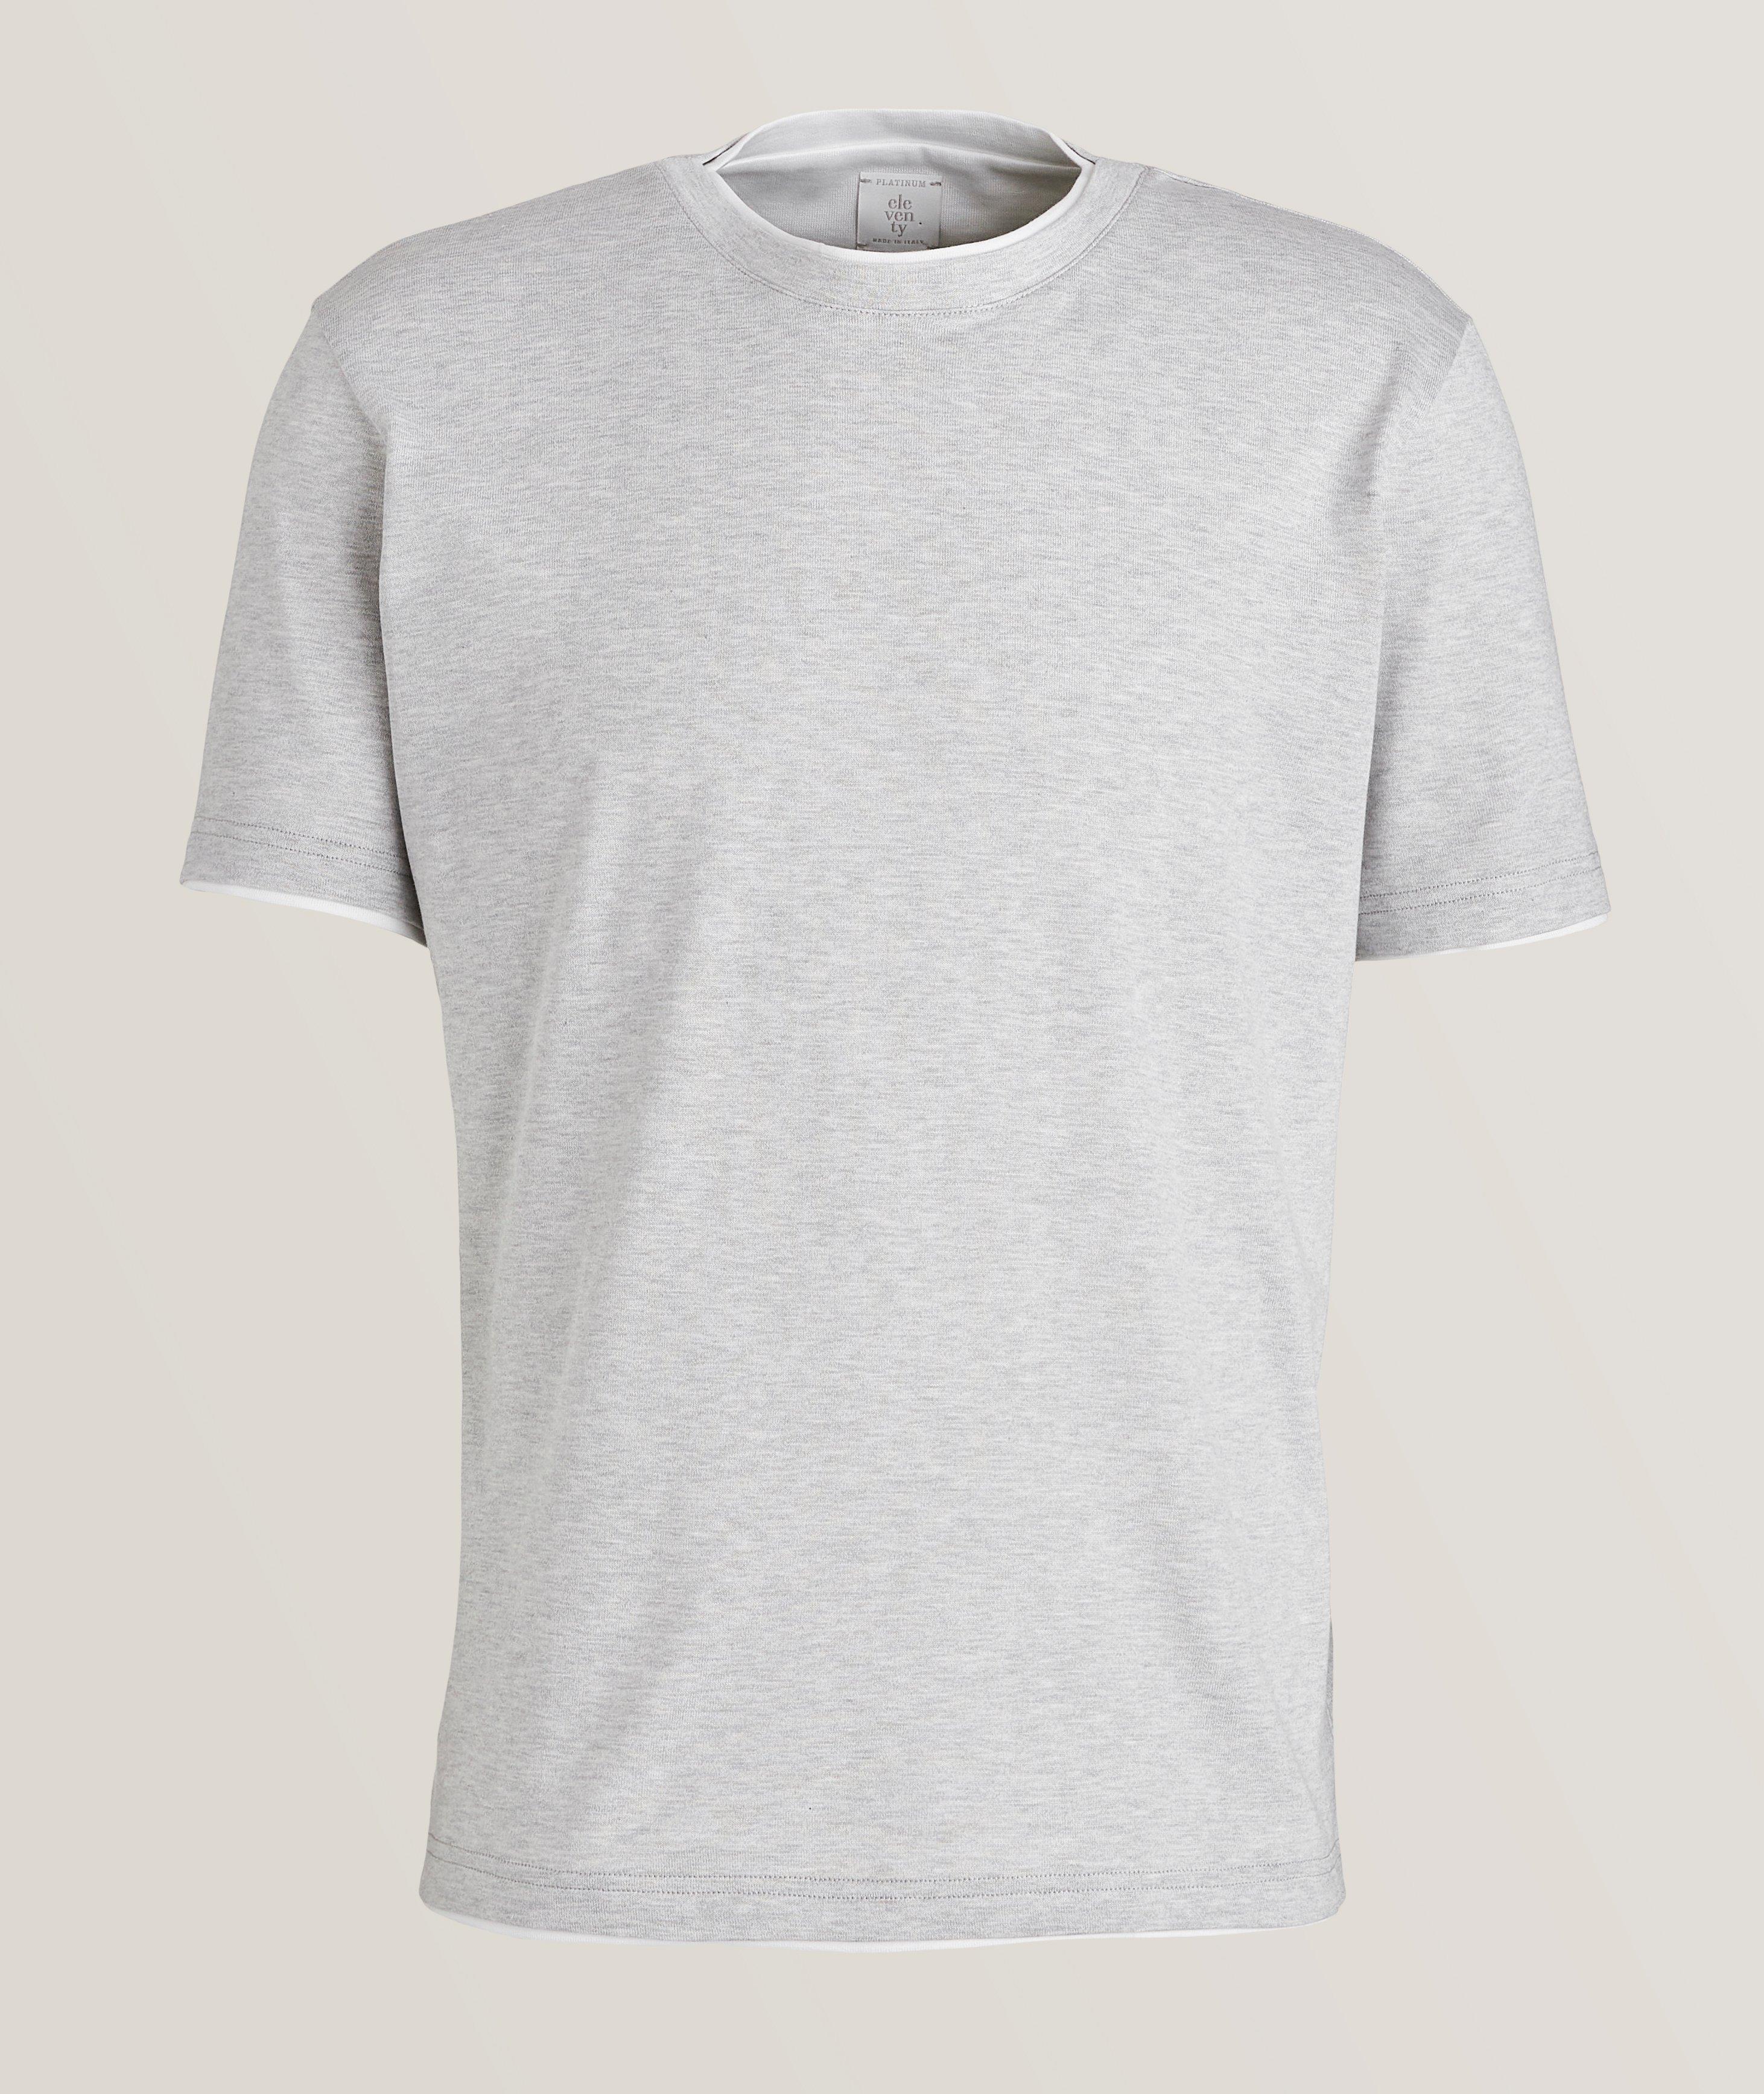 Double Layer Contrast Trim Cotton T-Shirt